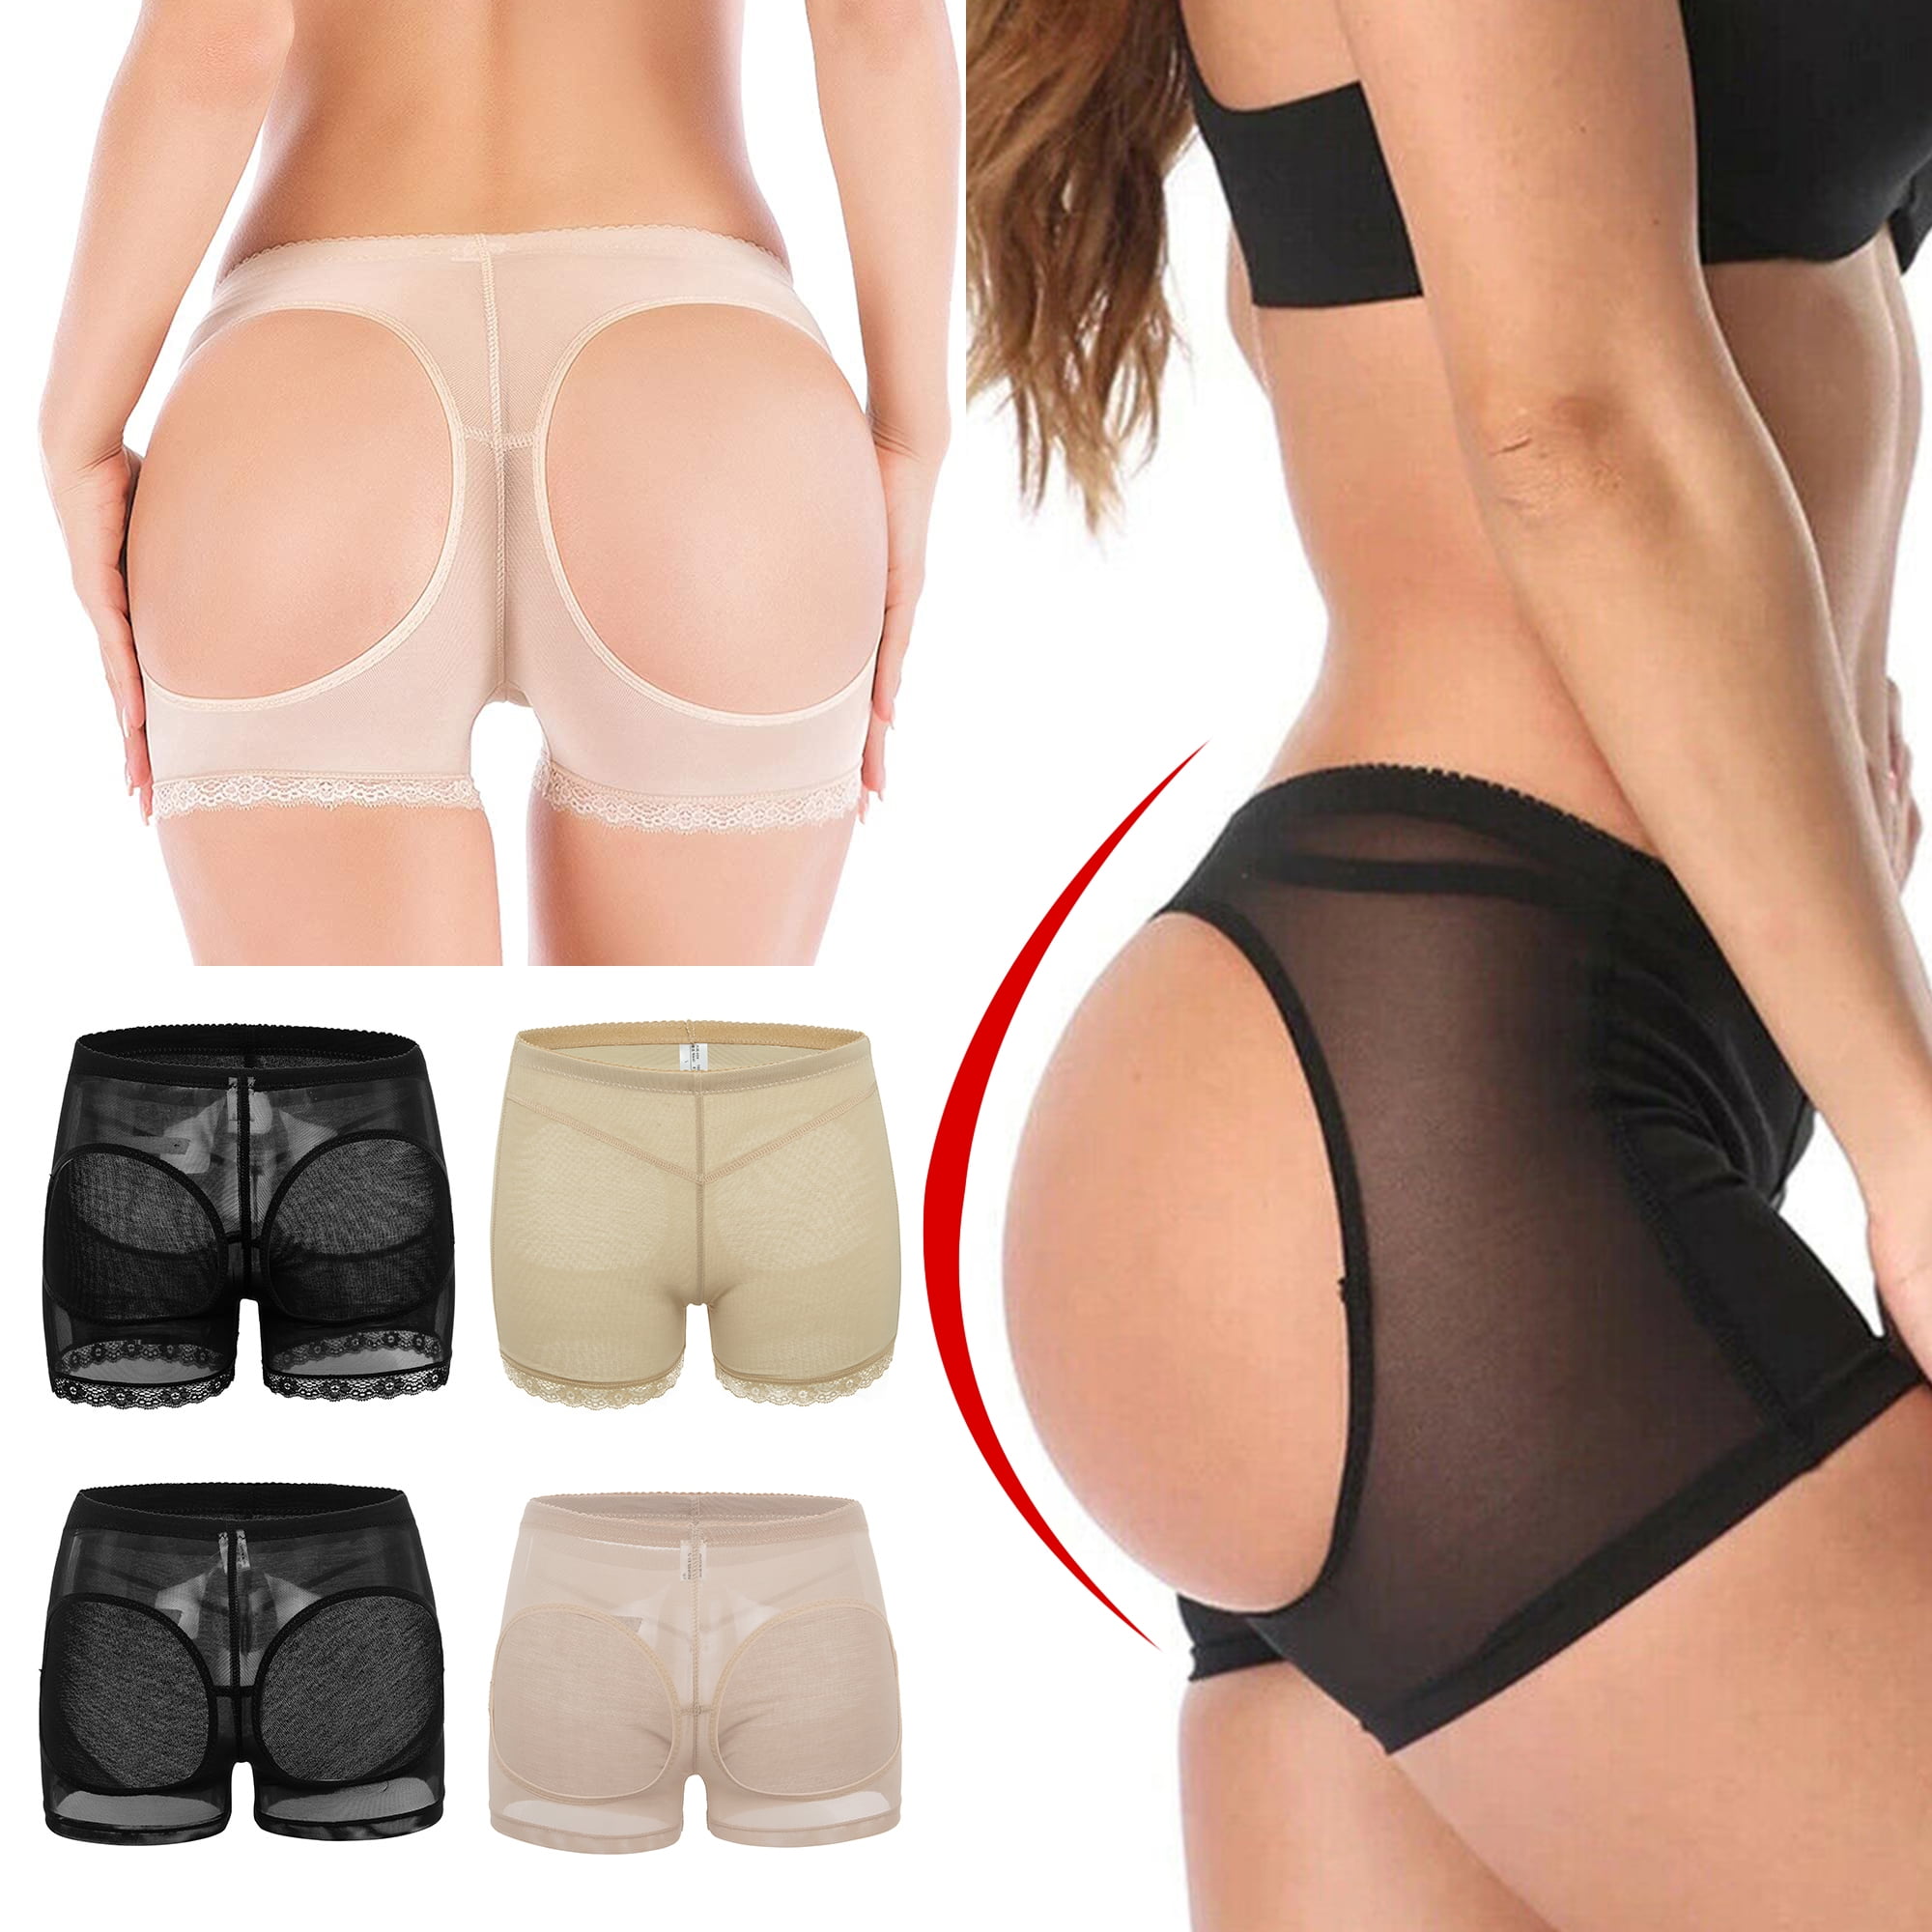 Butt Lifter Tummy Control Butt Lifting Panties Lift Underwear Booty Lifter Bigger Butt Shaper for Women Beige 3XL 276e2c29 78df 4206 9bec 2a15270debc2.feb3a4e78d7c0ee6ba56bfa962ac507b